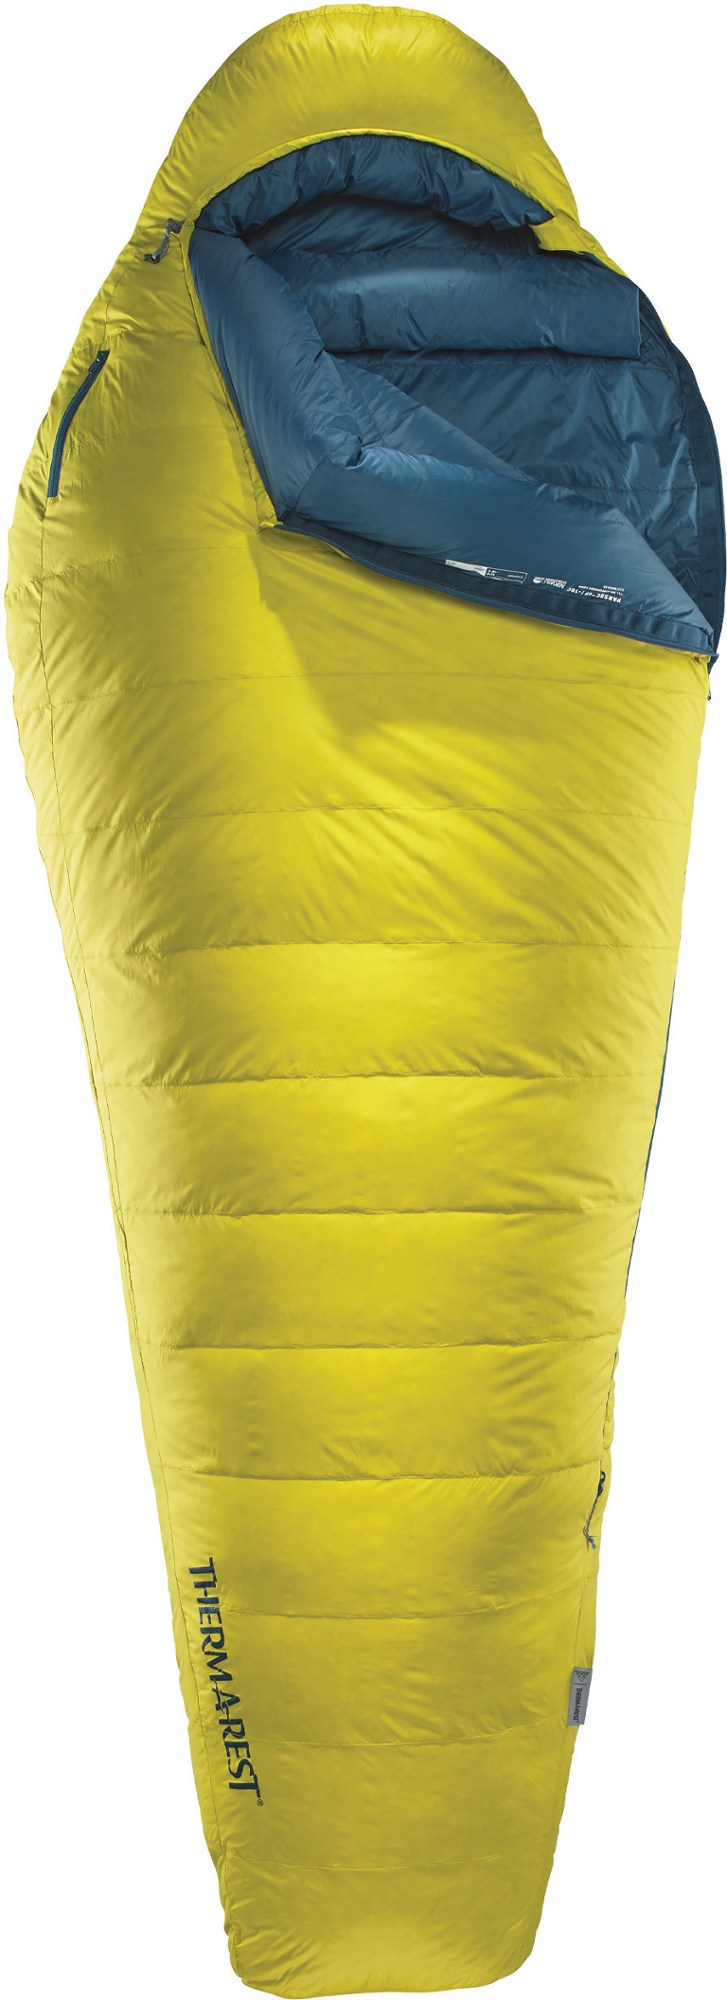 Спальный мешок Парсек 0 Therm-a-Rest, желтый фотографии